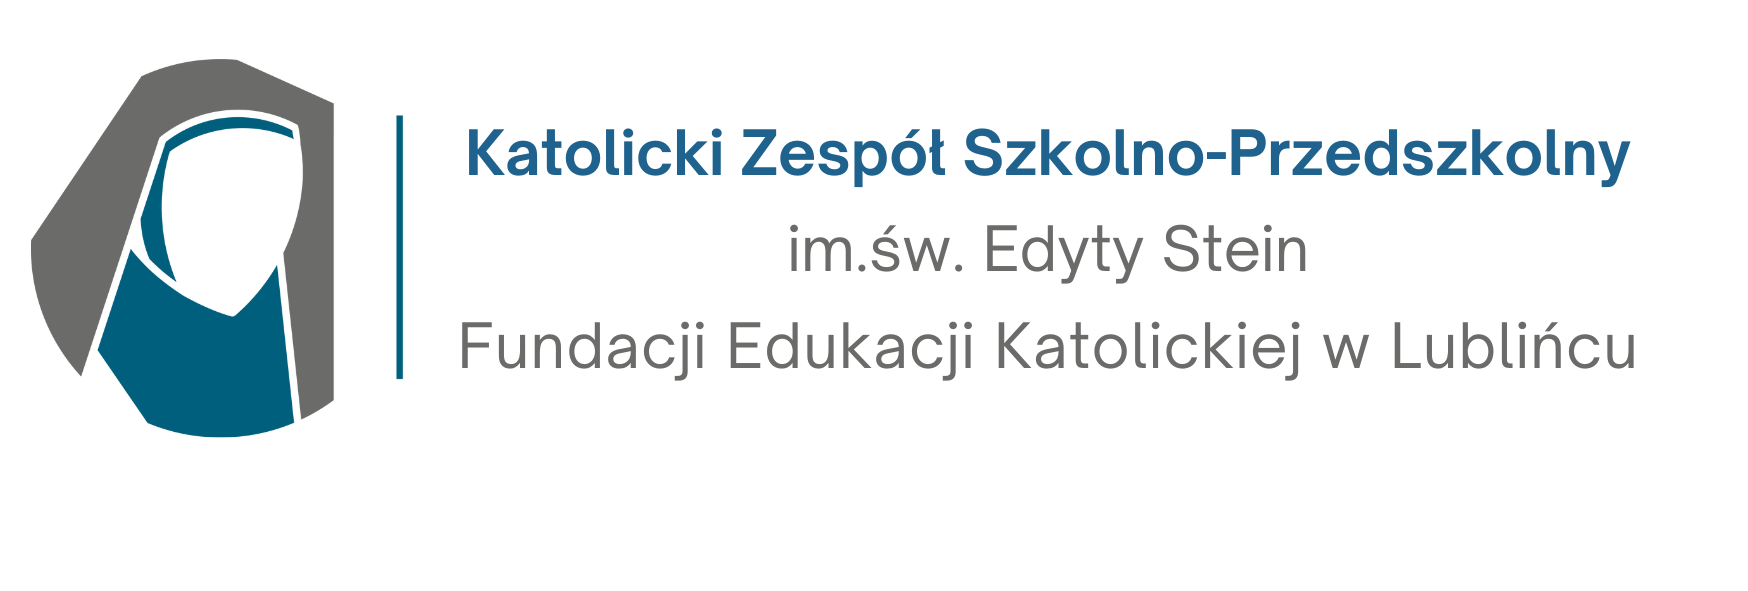 Zespół Szkół im. św. Edyty Stein w Lublińcu